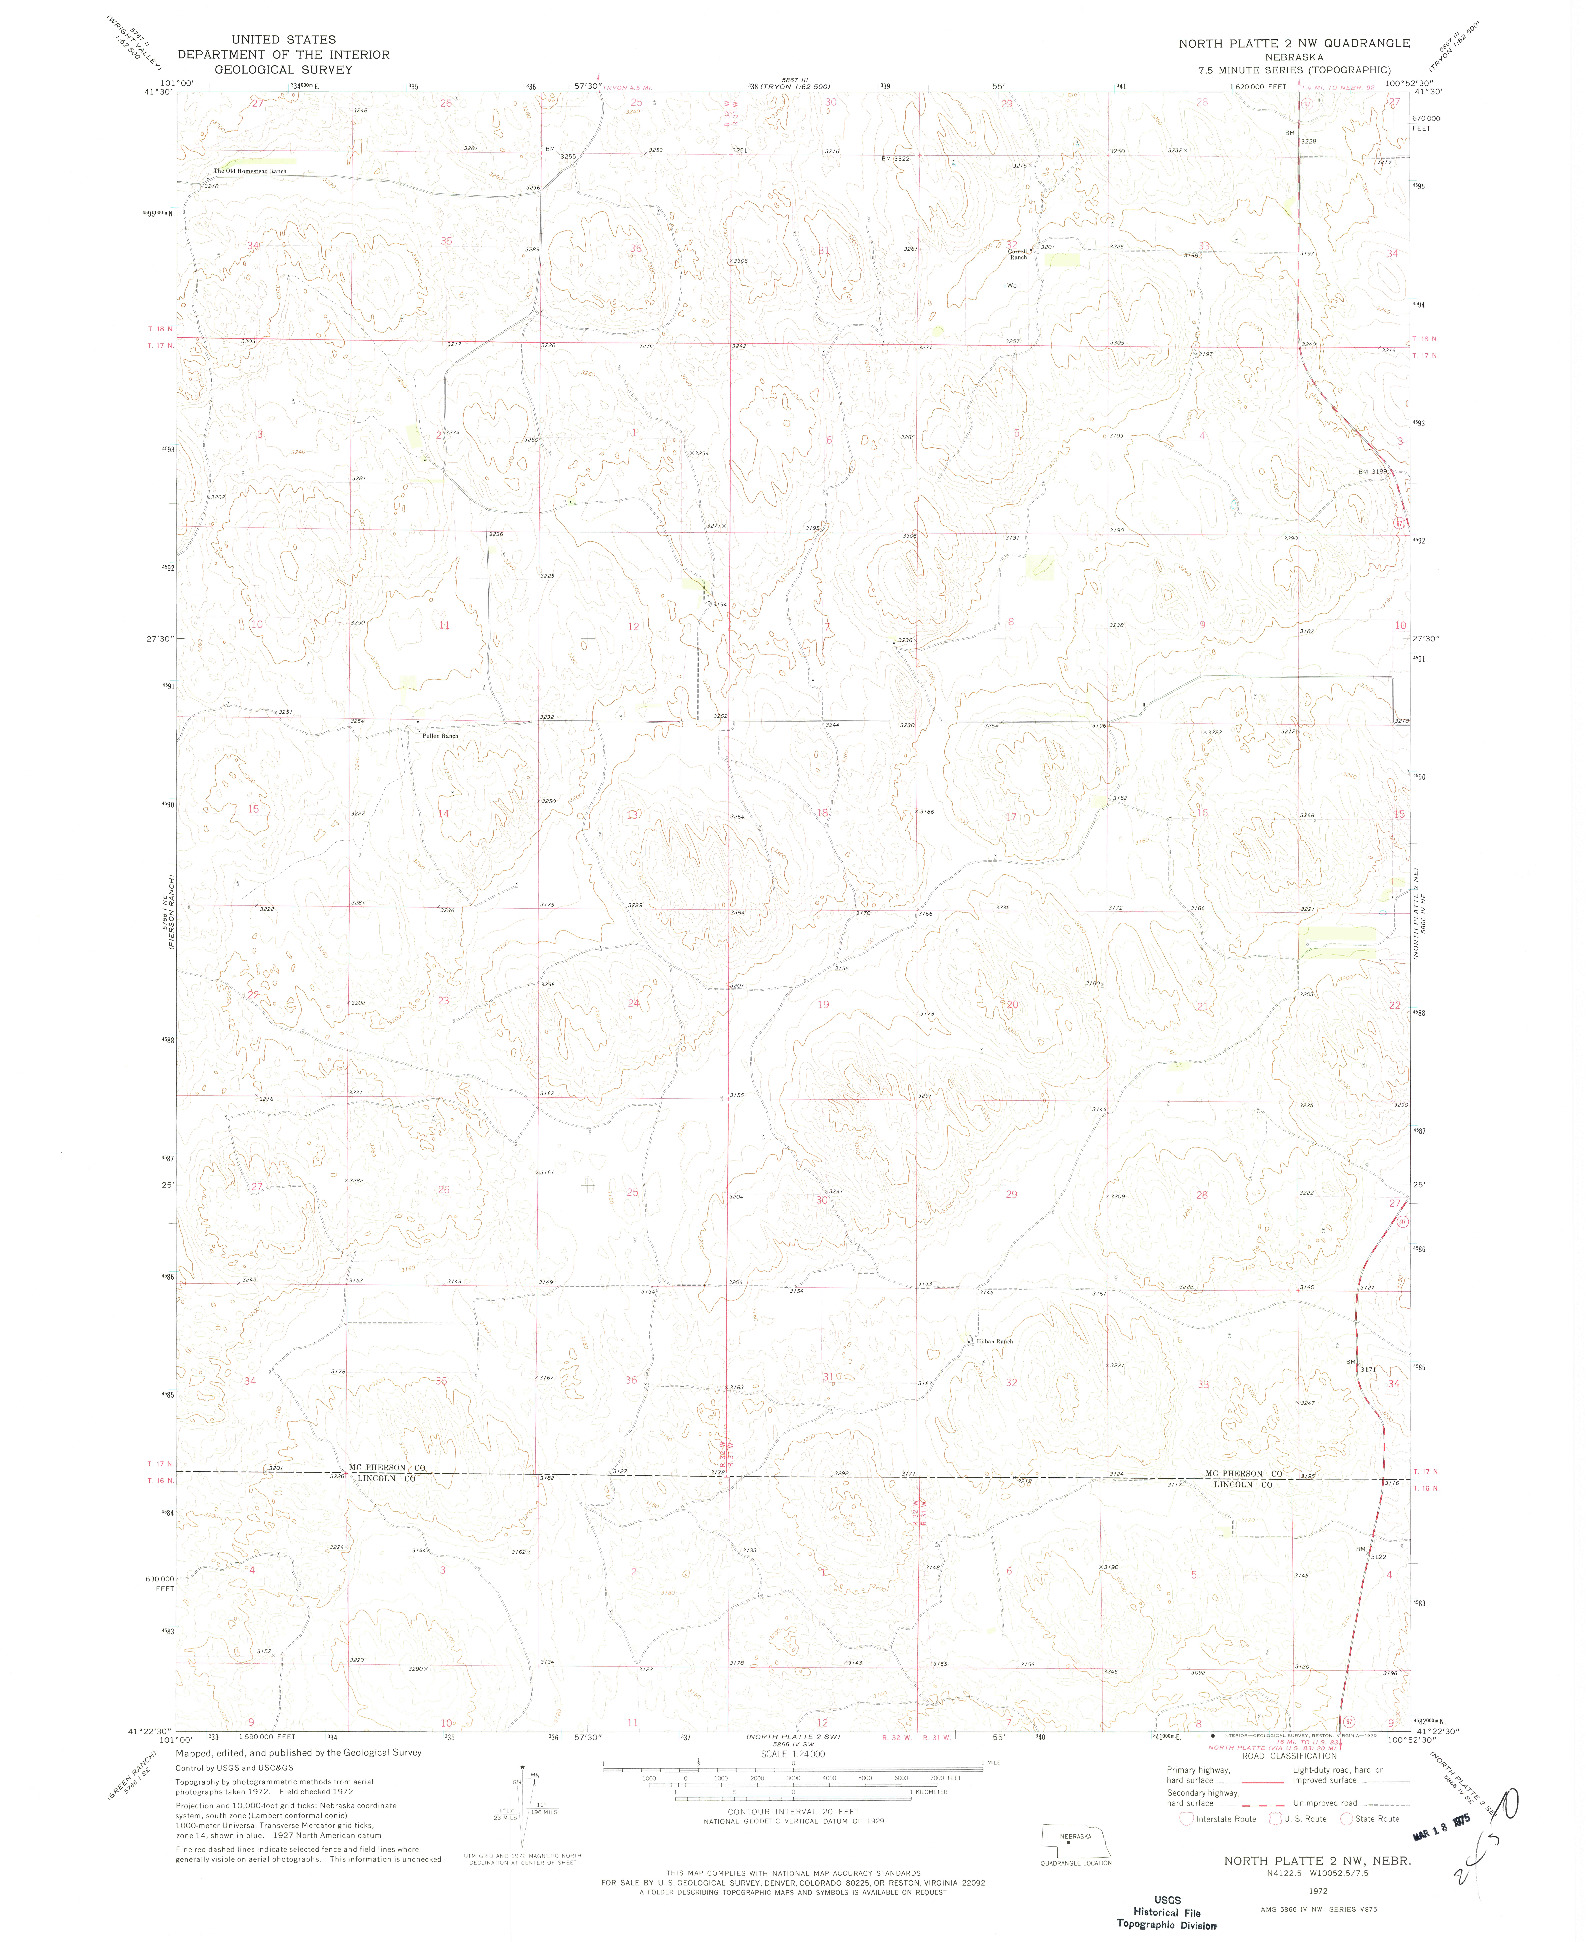 USGS 1:24000-SCALE QUADRANGLE FOR NORTH PLATTE 2 NW, NE 1972